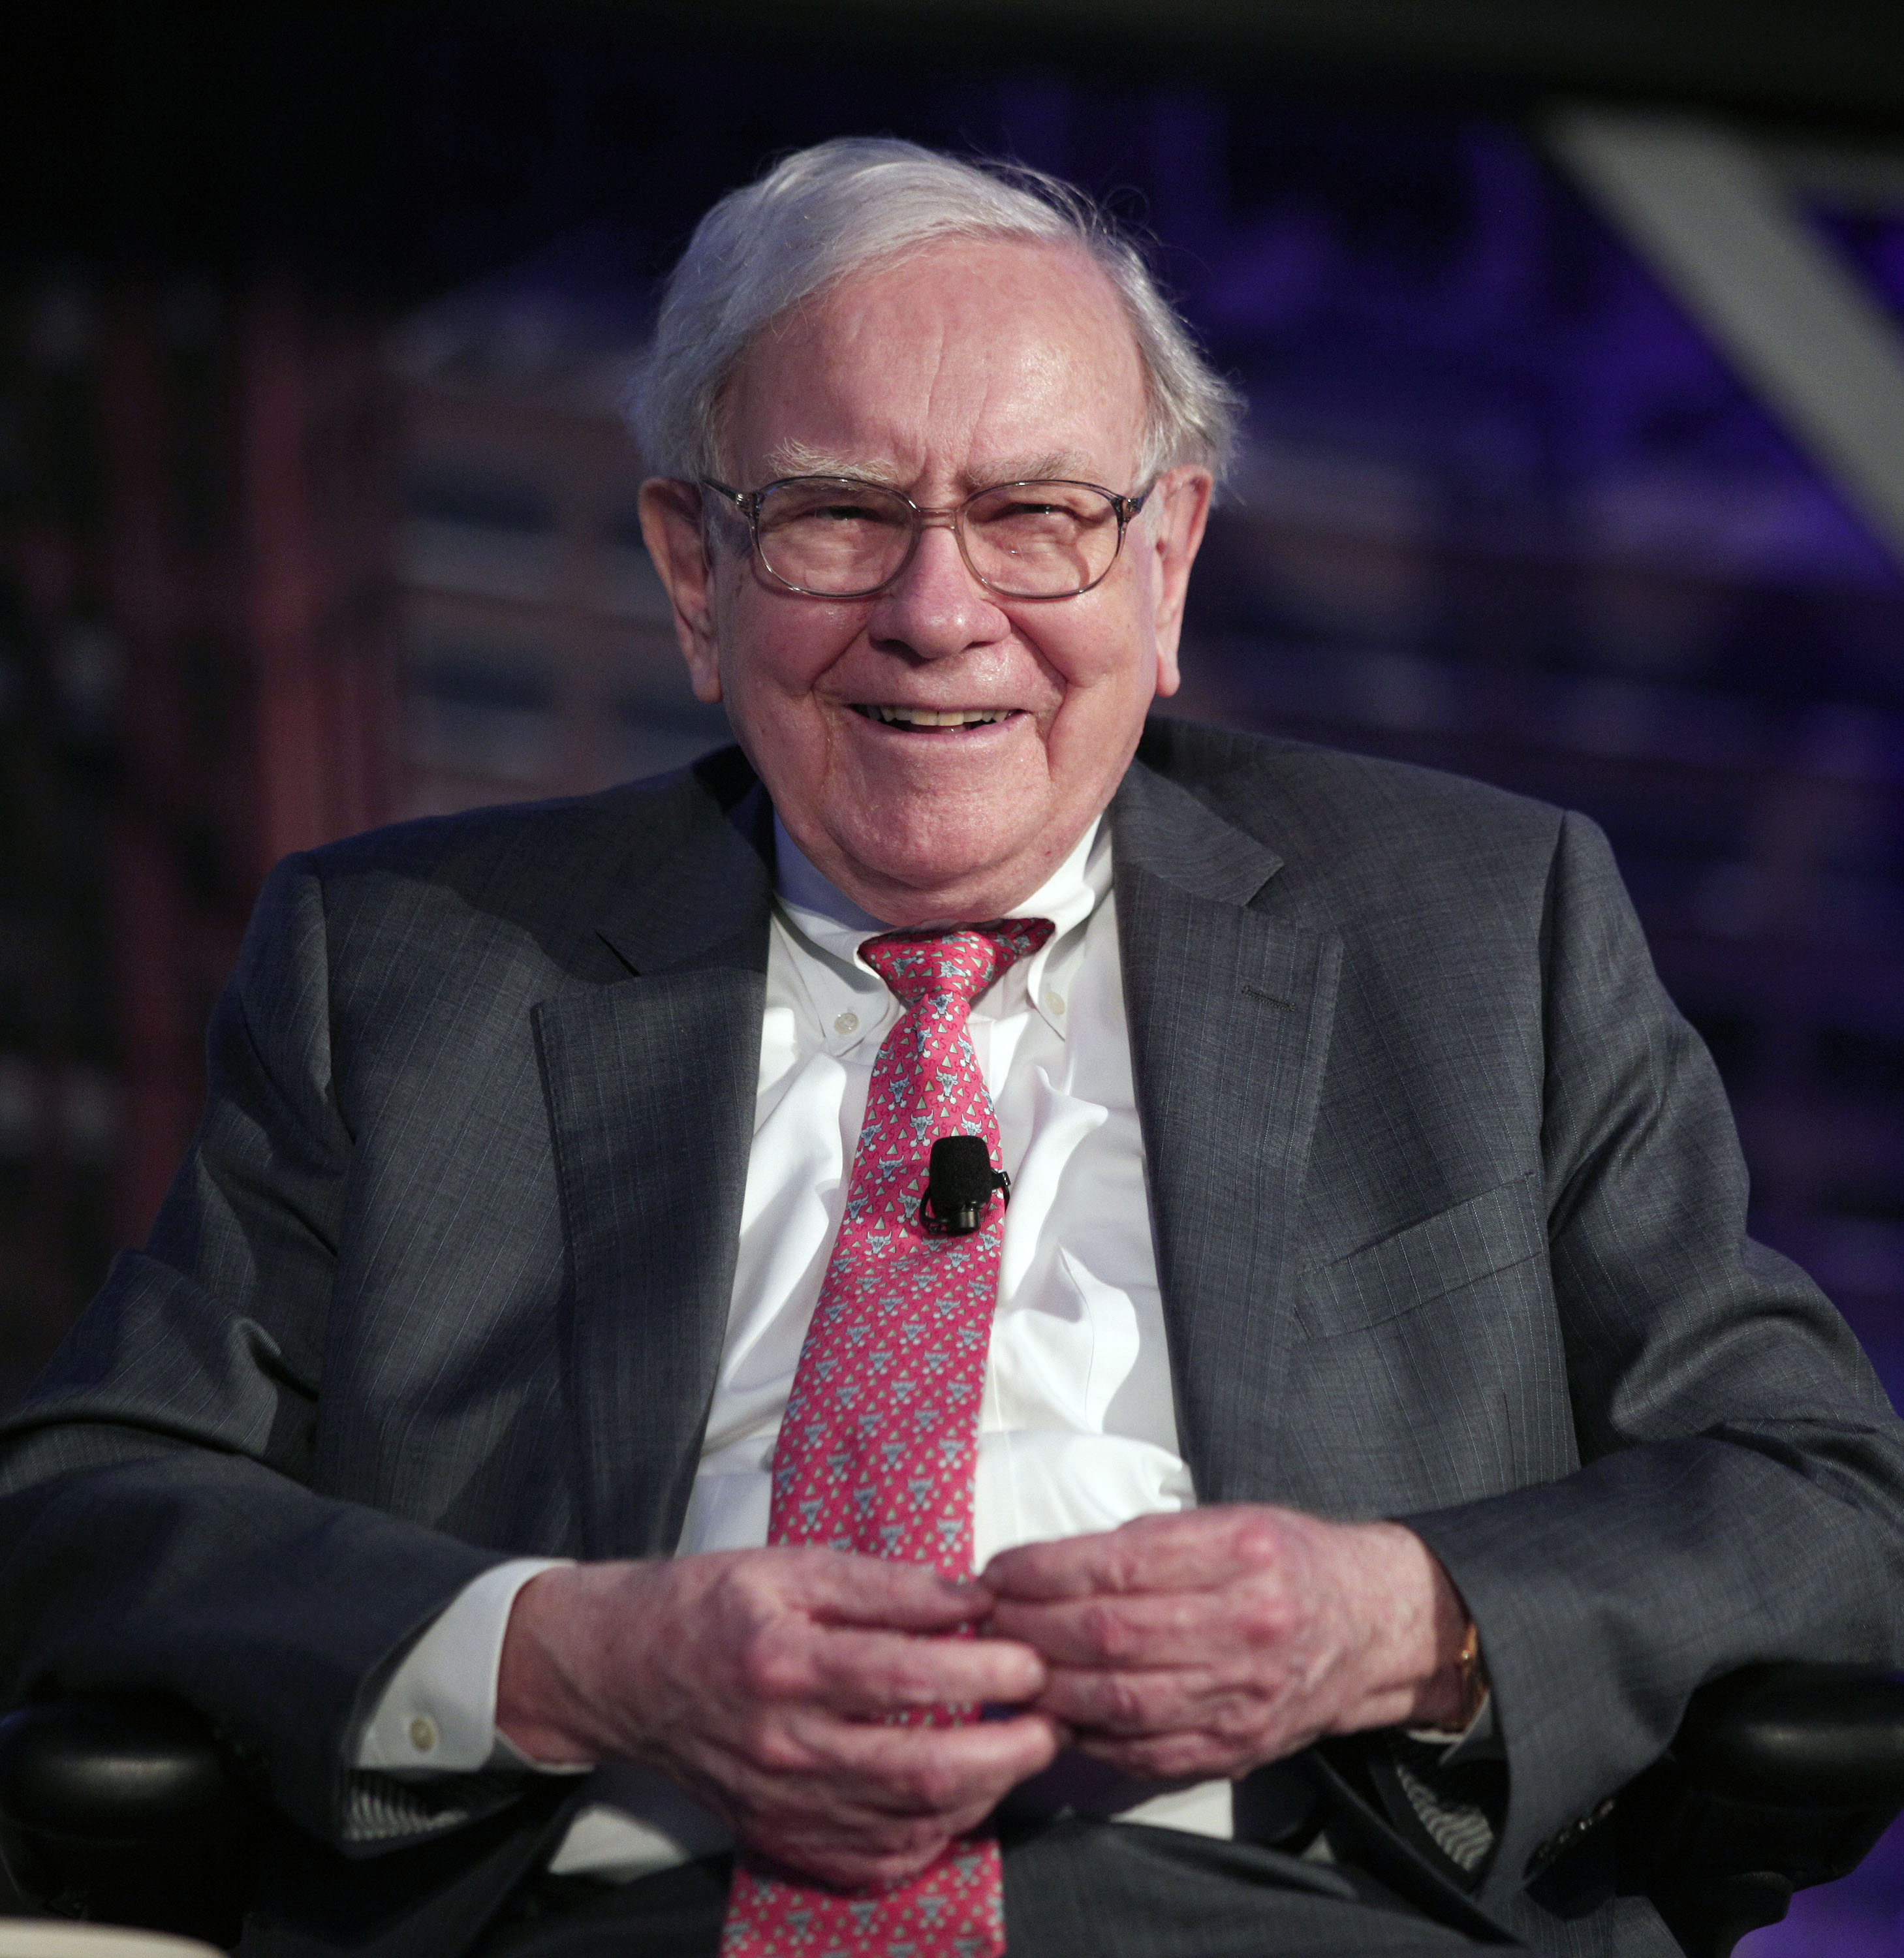 Billionaire investor Warren Buffett speaks at an event called, "Detroit Homecoming" on Sept. 18, 2014 in Detroit.